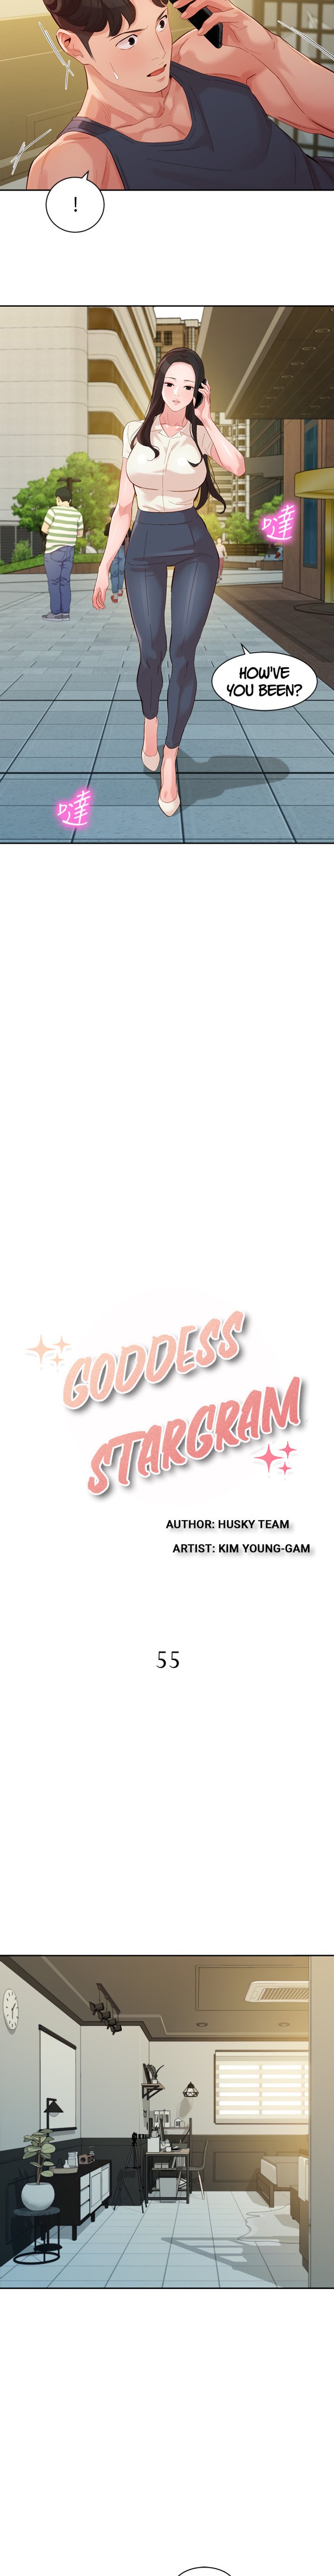 Goddess Stargram - Chapter 55 Page 2